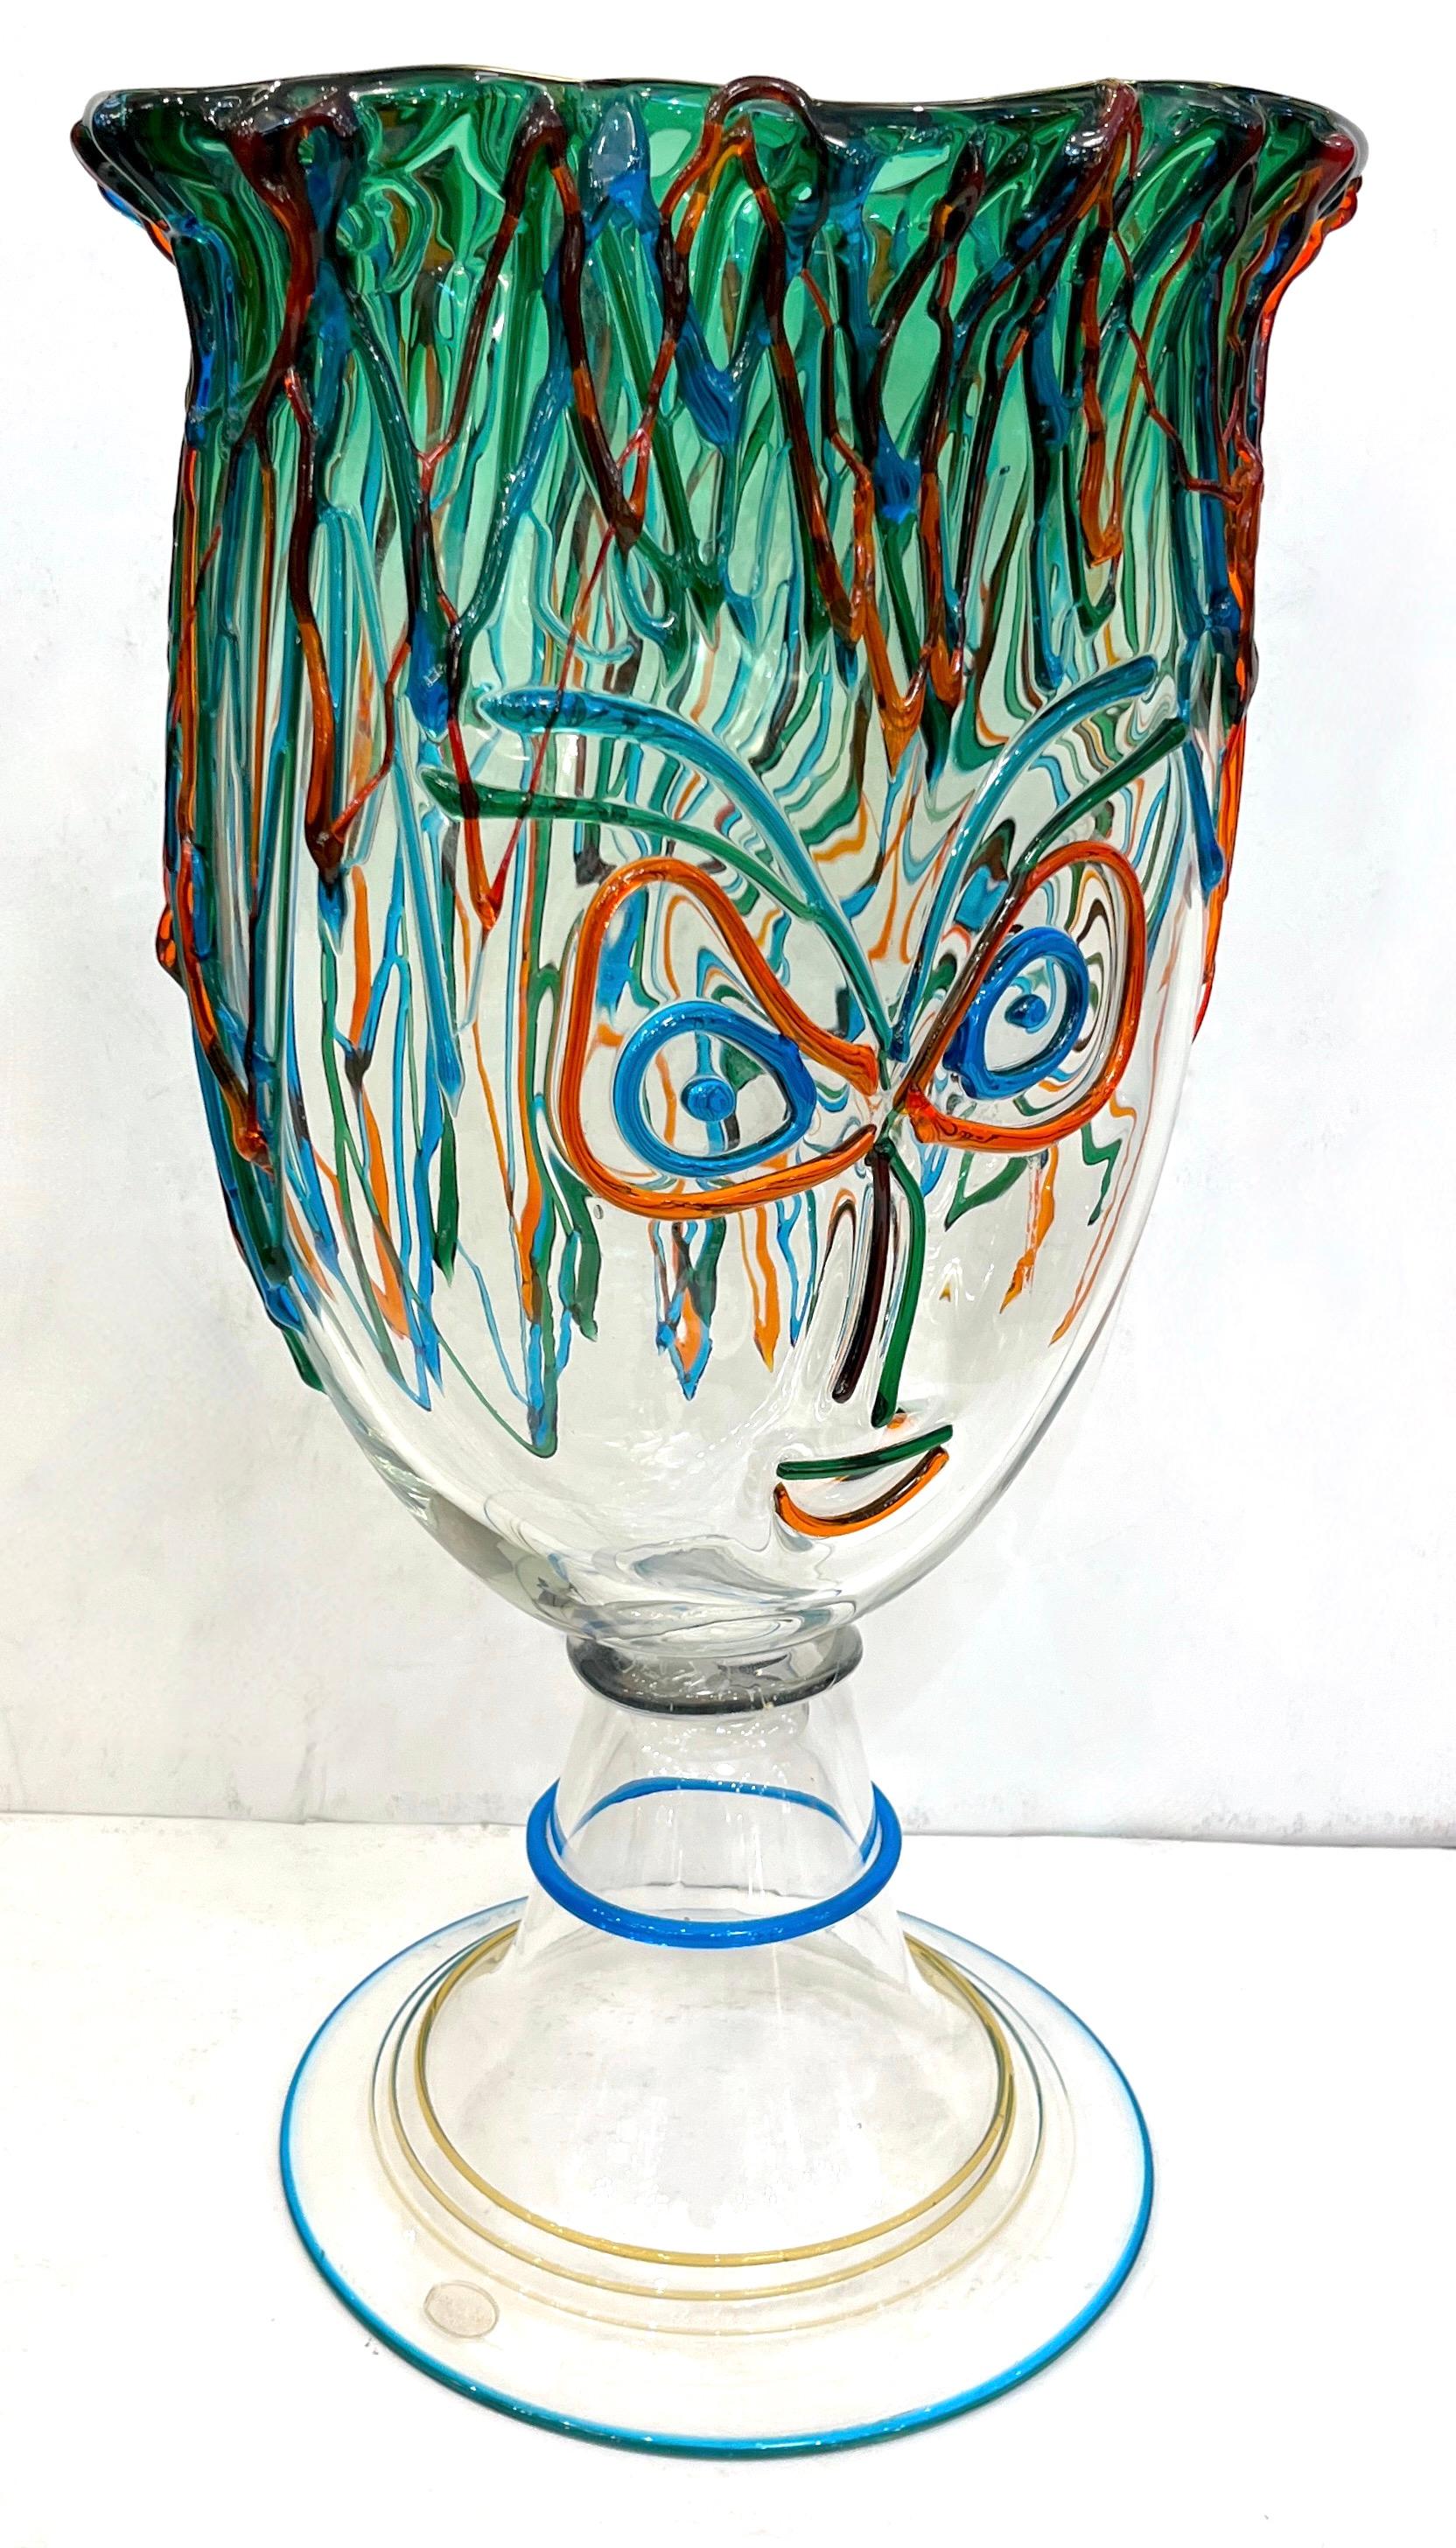 Ce vase signé est une sculpture de tête unique en verre d'art vintage, d'un design dynamique moderniste. Haute qualité d'exécution avec le corps cristallin teinté d'une partie supérieure en vert tilleul dégradé et décoré comme un visage picassien en